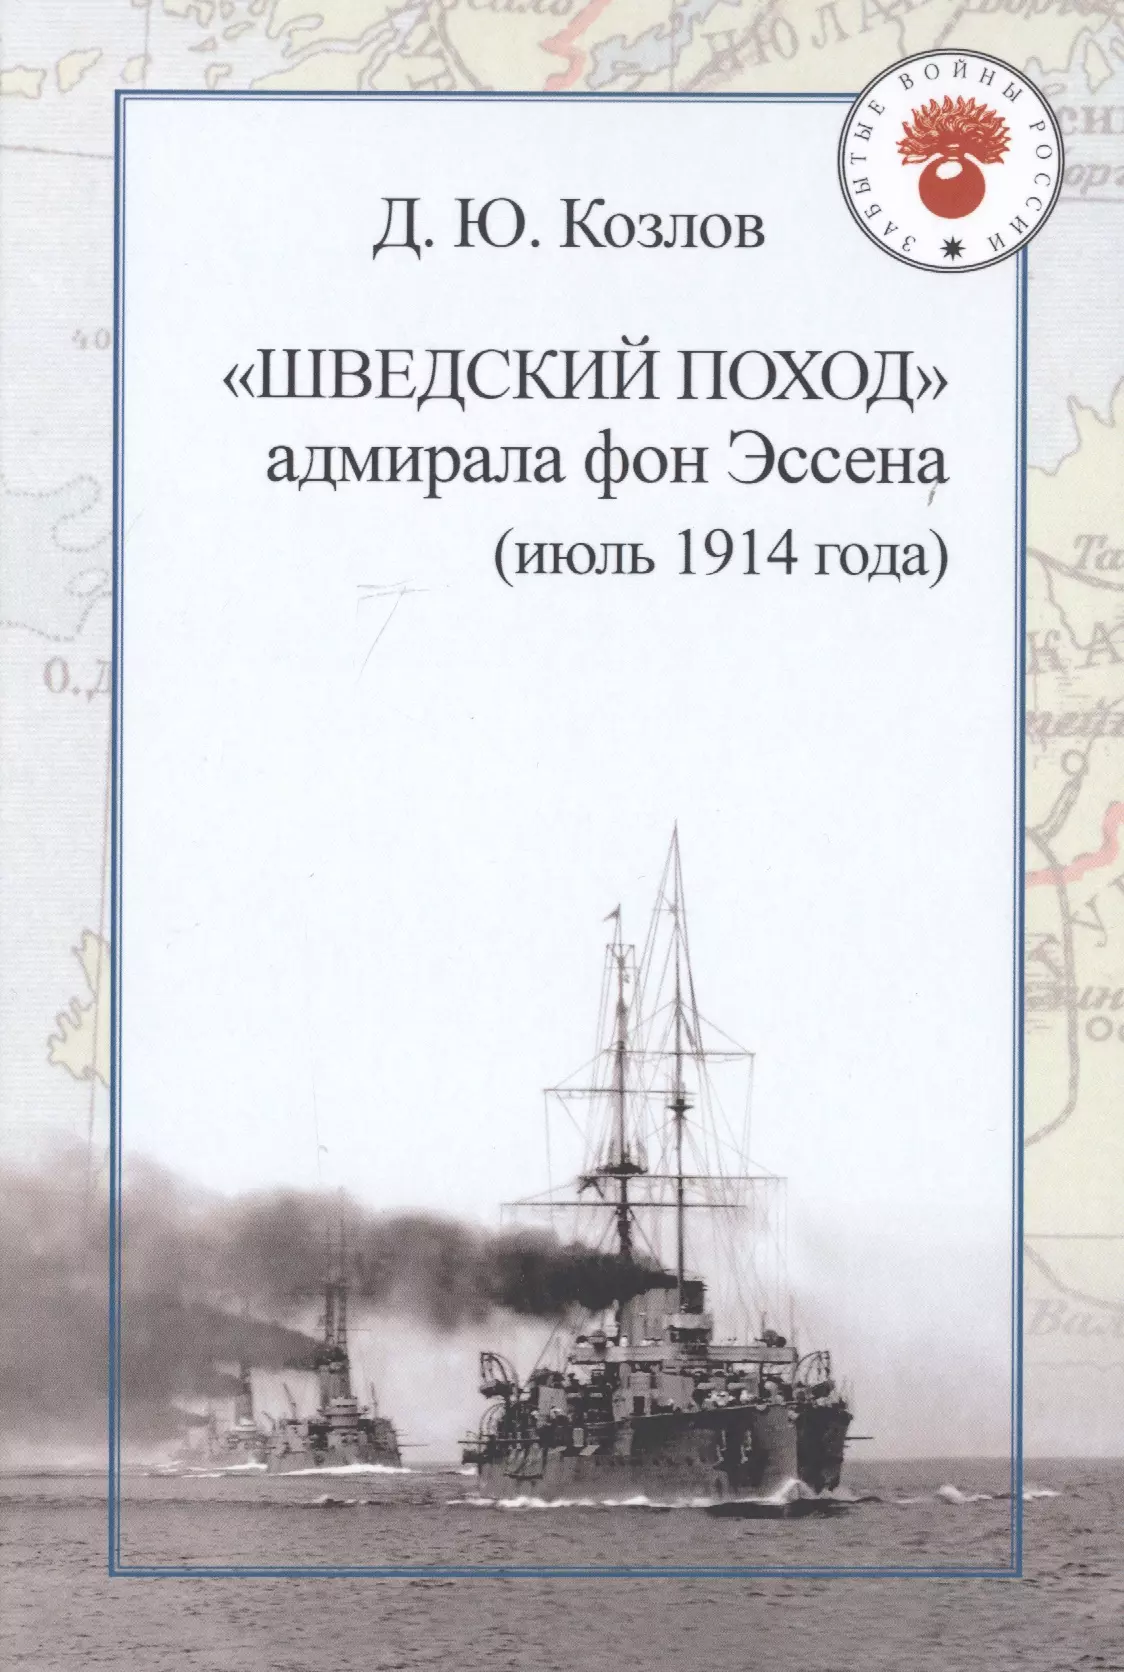 Козлов Денис Юрьевич - "Шведский поход" адмирала фон Эссена (июль 1914 года)